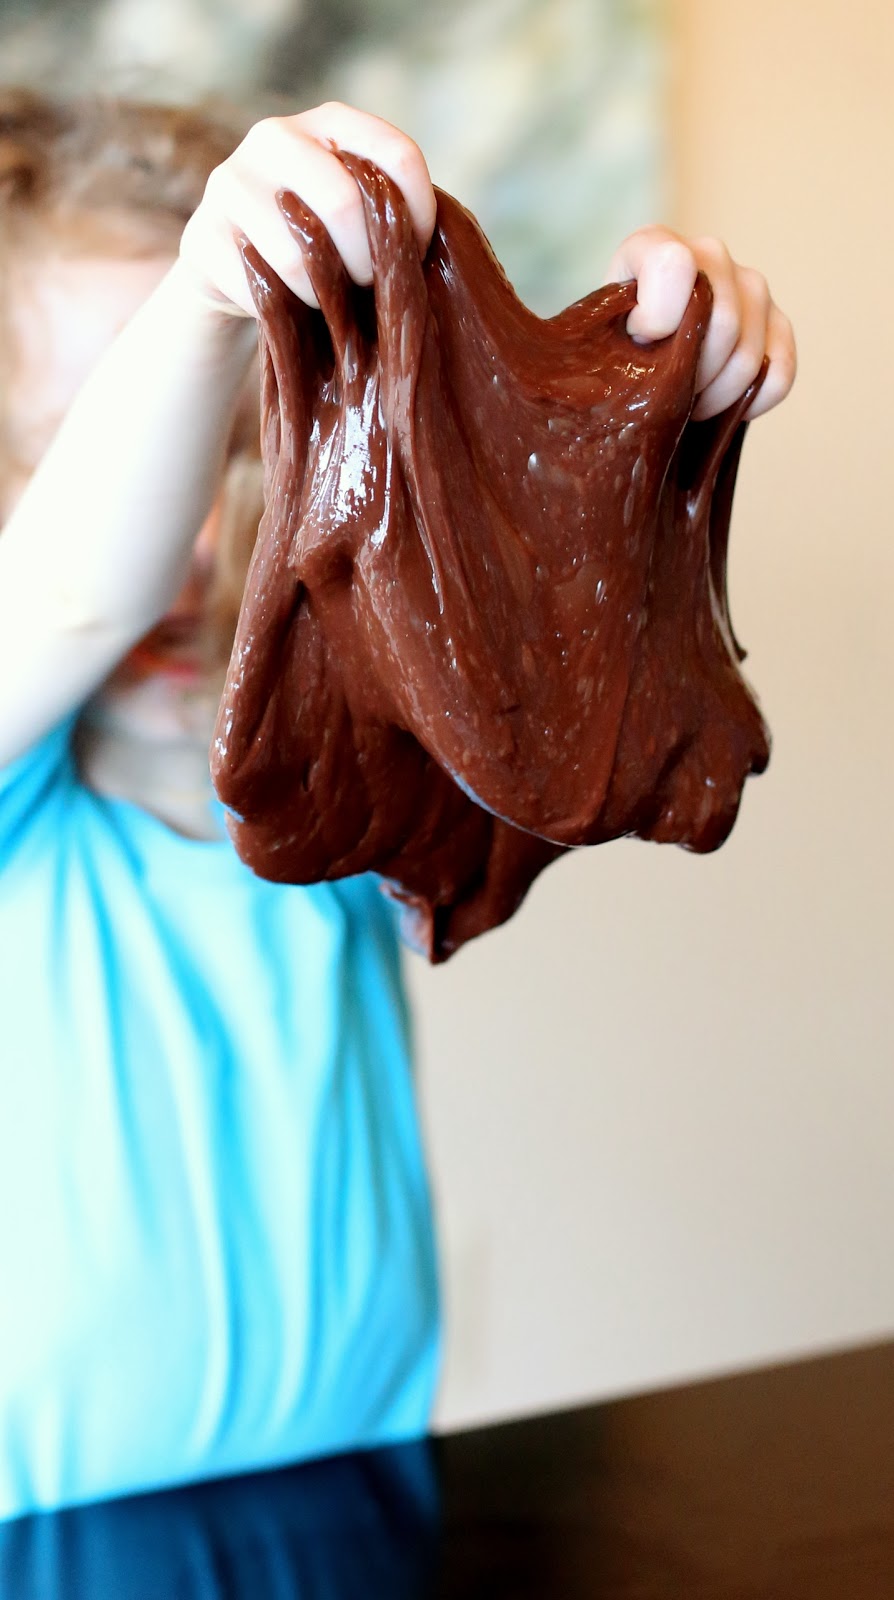 Лизун с ароматом шоколада-большой комок в руках ребенка